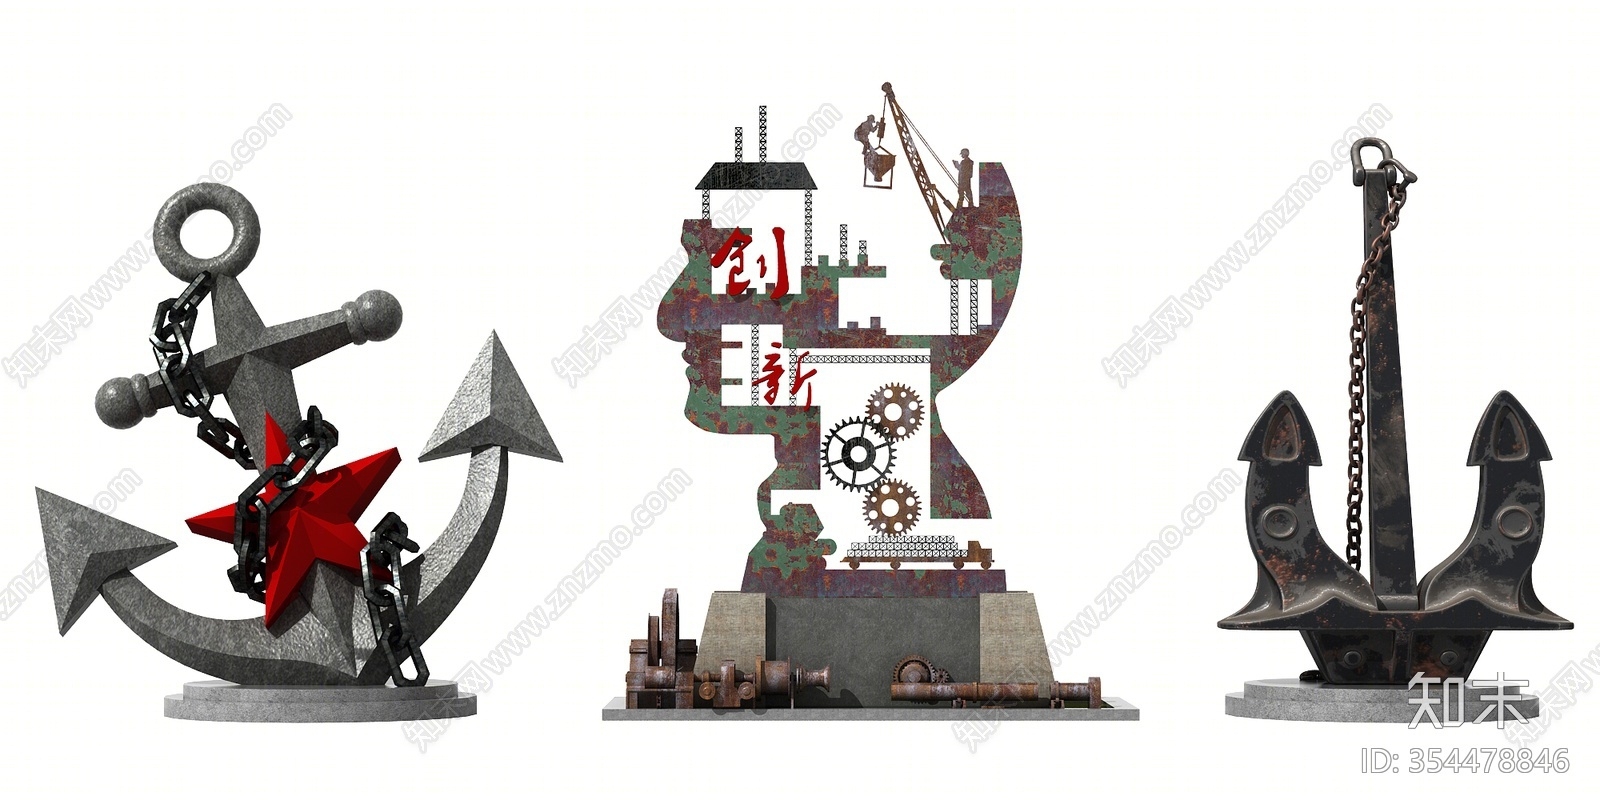 工业风雕塑3d模型下载【id:354478846】